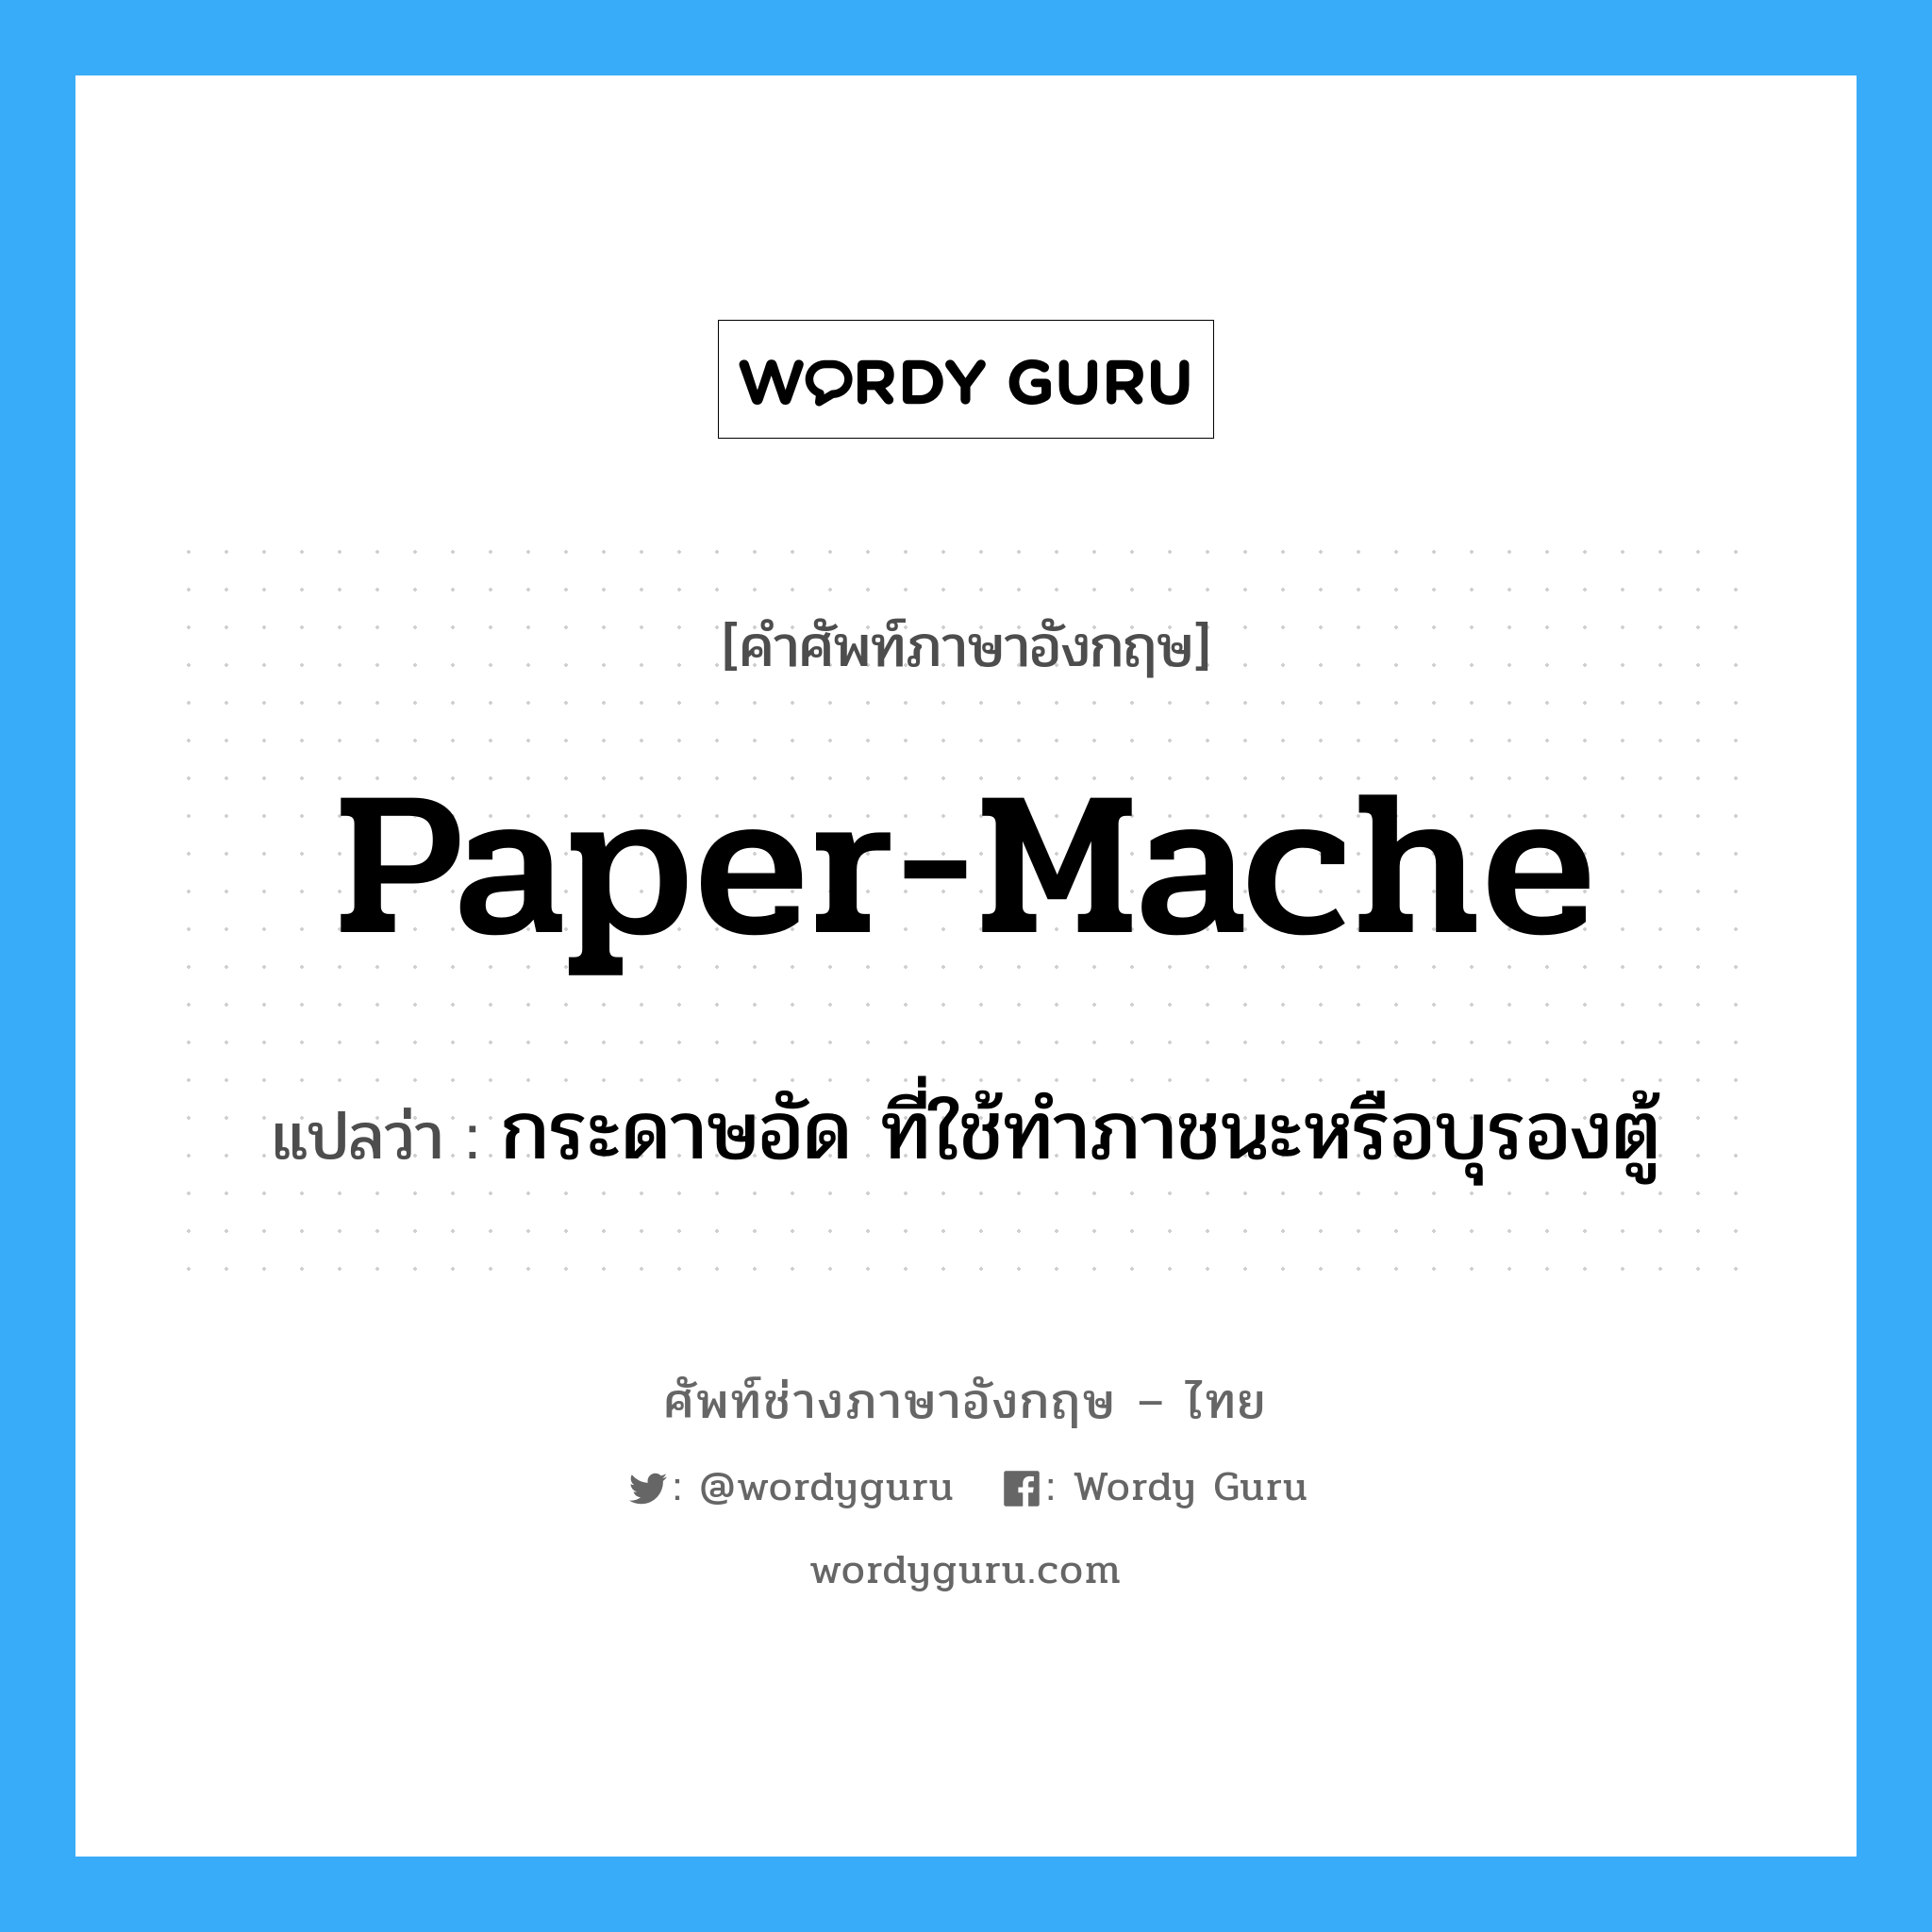 กระดาษอัด ที่ใช้ทำภาชนะหรือบุรองตู้ ภาษาอังกฤษ?, คำศัพท์ช่างภาษาอังกฤษ - ไทย กระดาษอัด ที่ใช้ทำภาชนะหรือบุรองตู้ คำศัพท์ภาษาอังกฤษ กระดาษอัด ที่ใช้ทำภาชนะหรือบุรองตู้ แปลว่า paper-mache